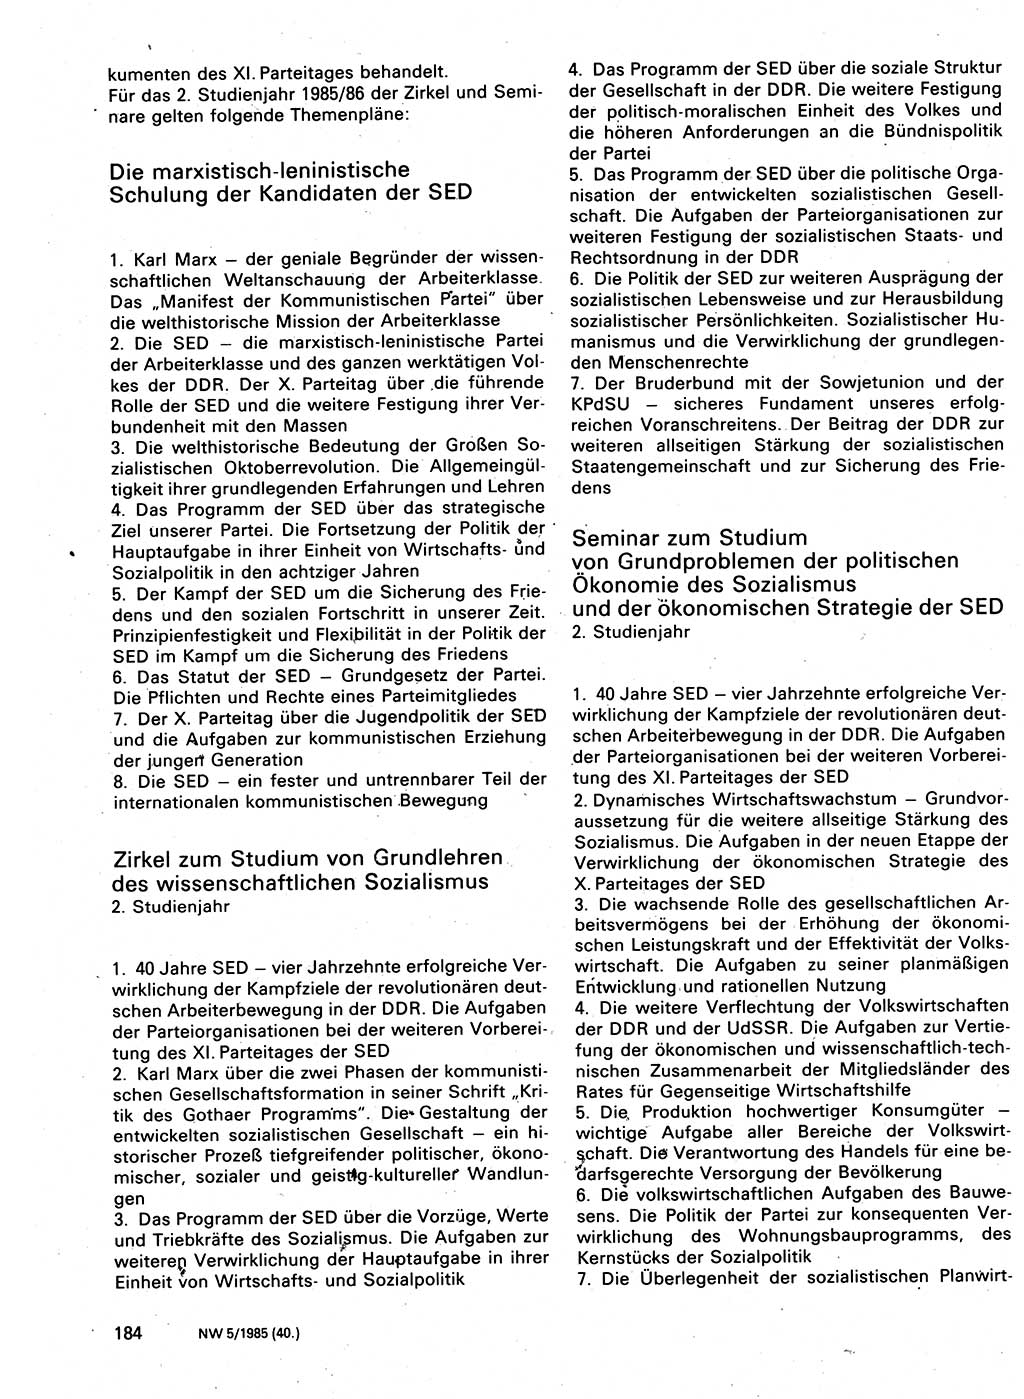 Neuer Weg (NW), Organ des Zentralkomitees (ZK) der SED (Sozialistische Einheitspartei Deutschlands) für Fragen des Parteilebens, 40. Jahrgang [Deutsche Demokratische Republik (DDR)] 1985, Seite 184 (NW ZK SED DDR 1985, S. 184)